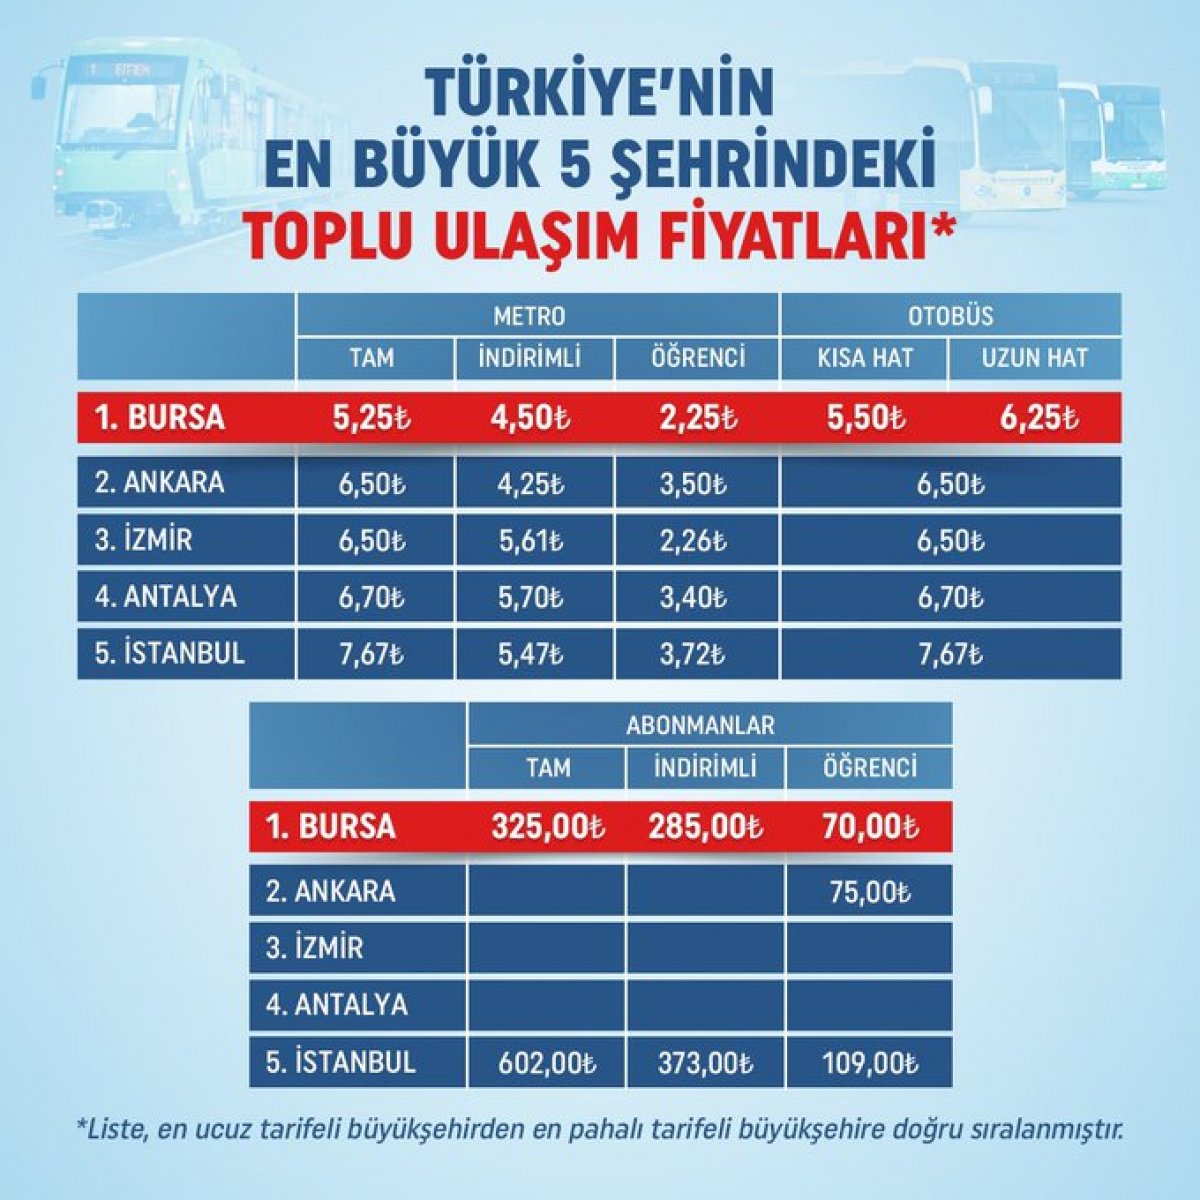 Türkiye’nin en büyük 5 şehrinde ulaşım ücretleri #1